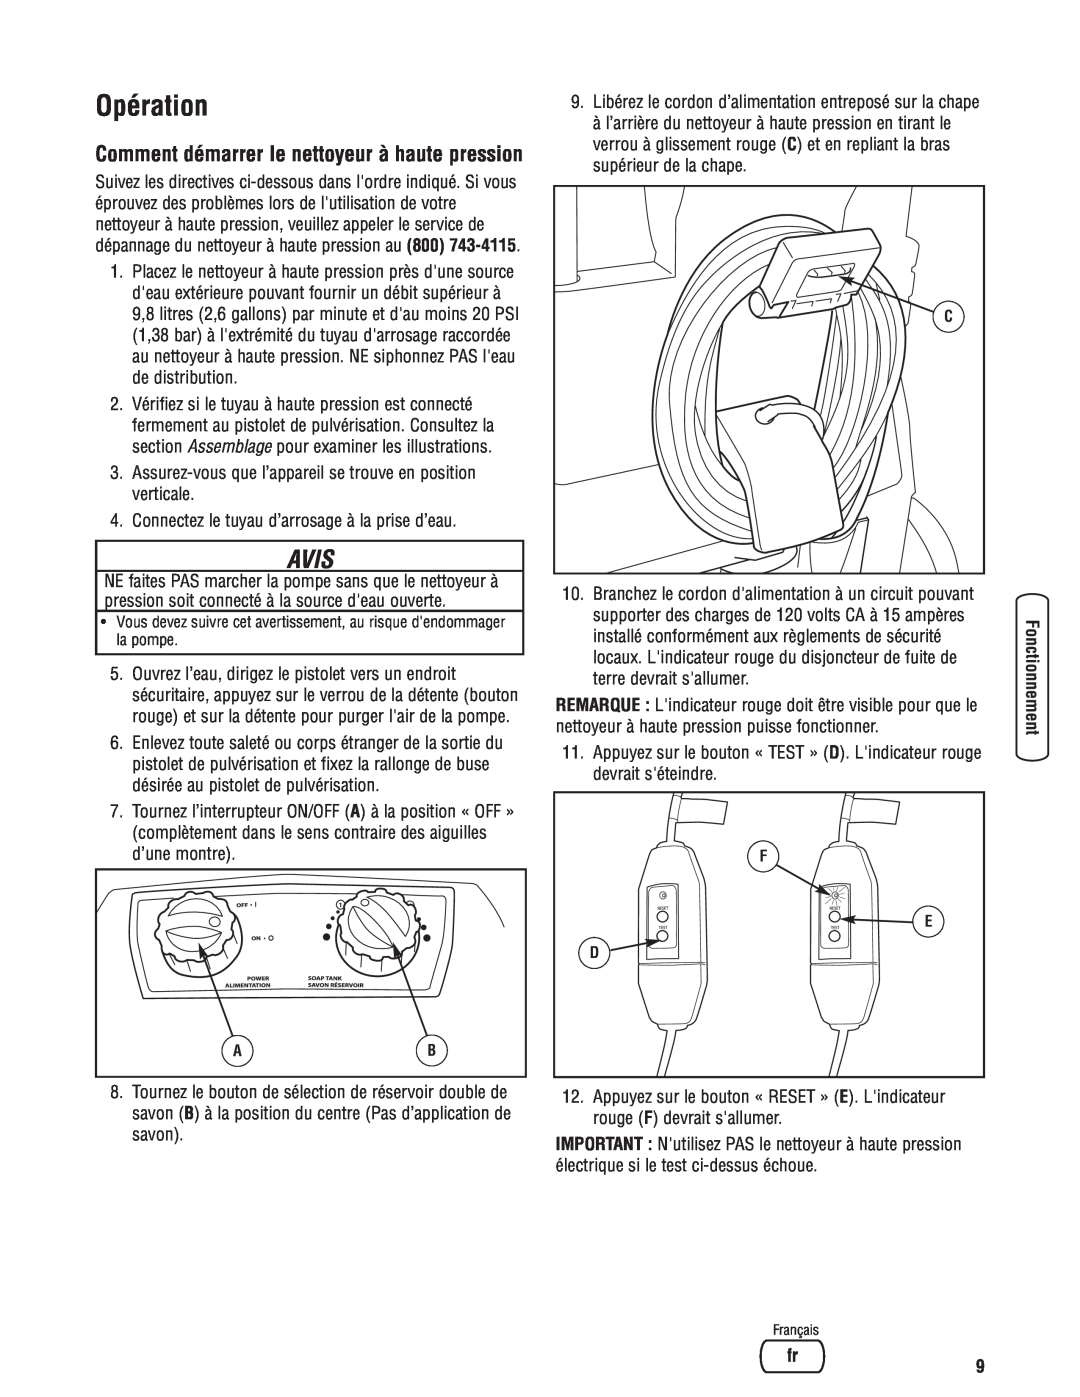 Briggs & Stratton Electric Pressure Washer manual Opération, Comment démarrer le nettoyeur à haute pression, Avis 